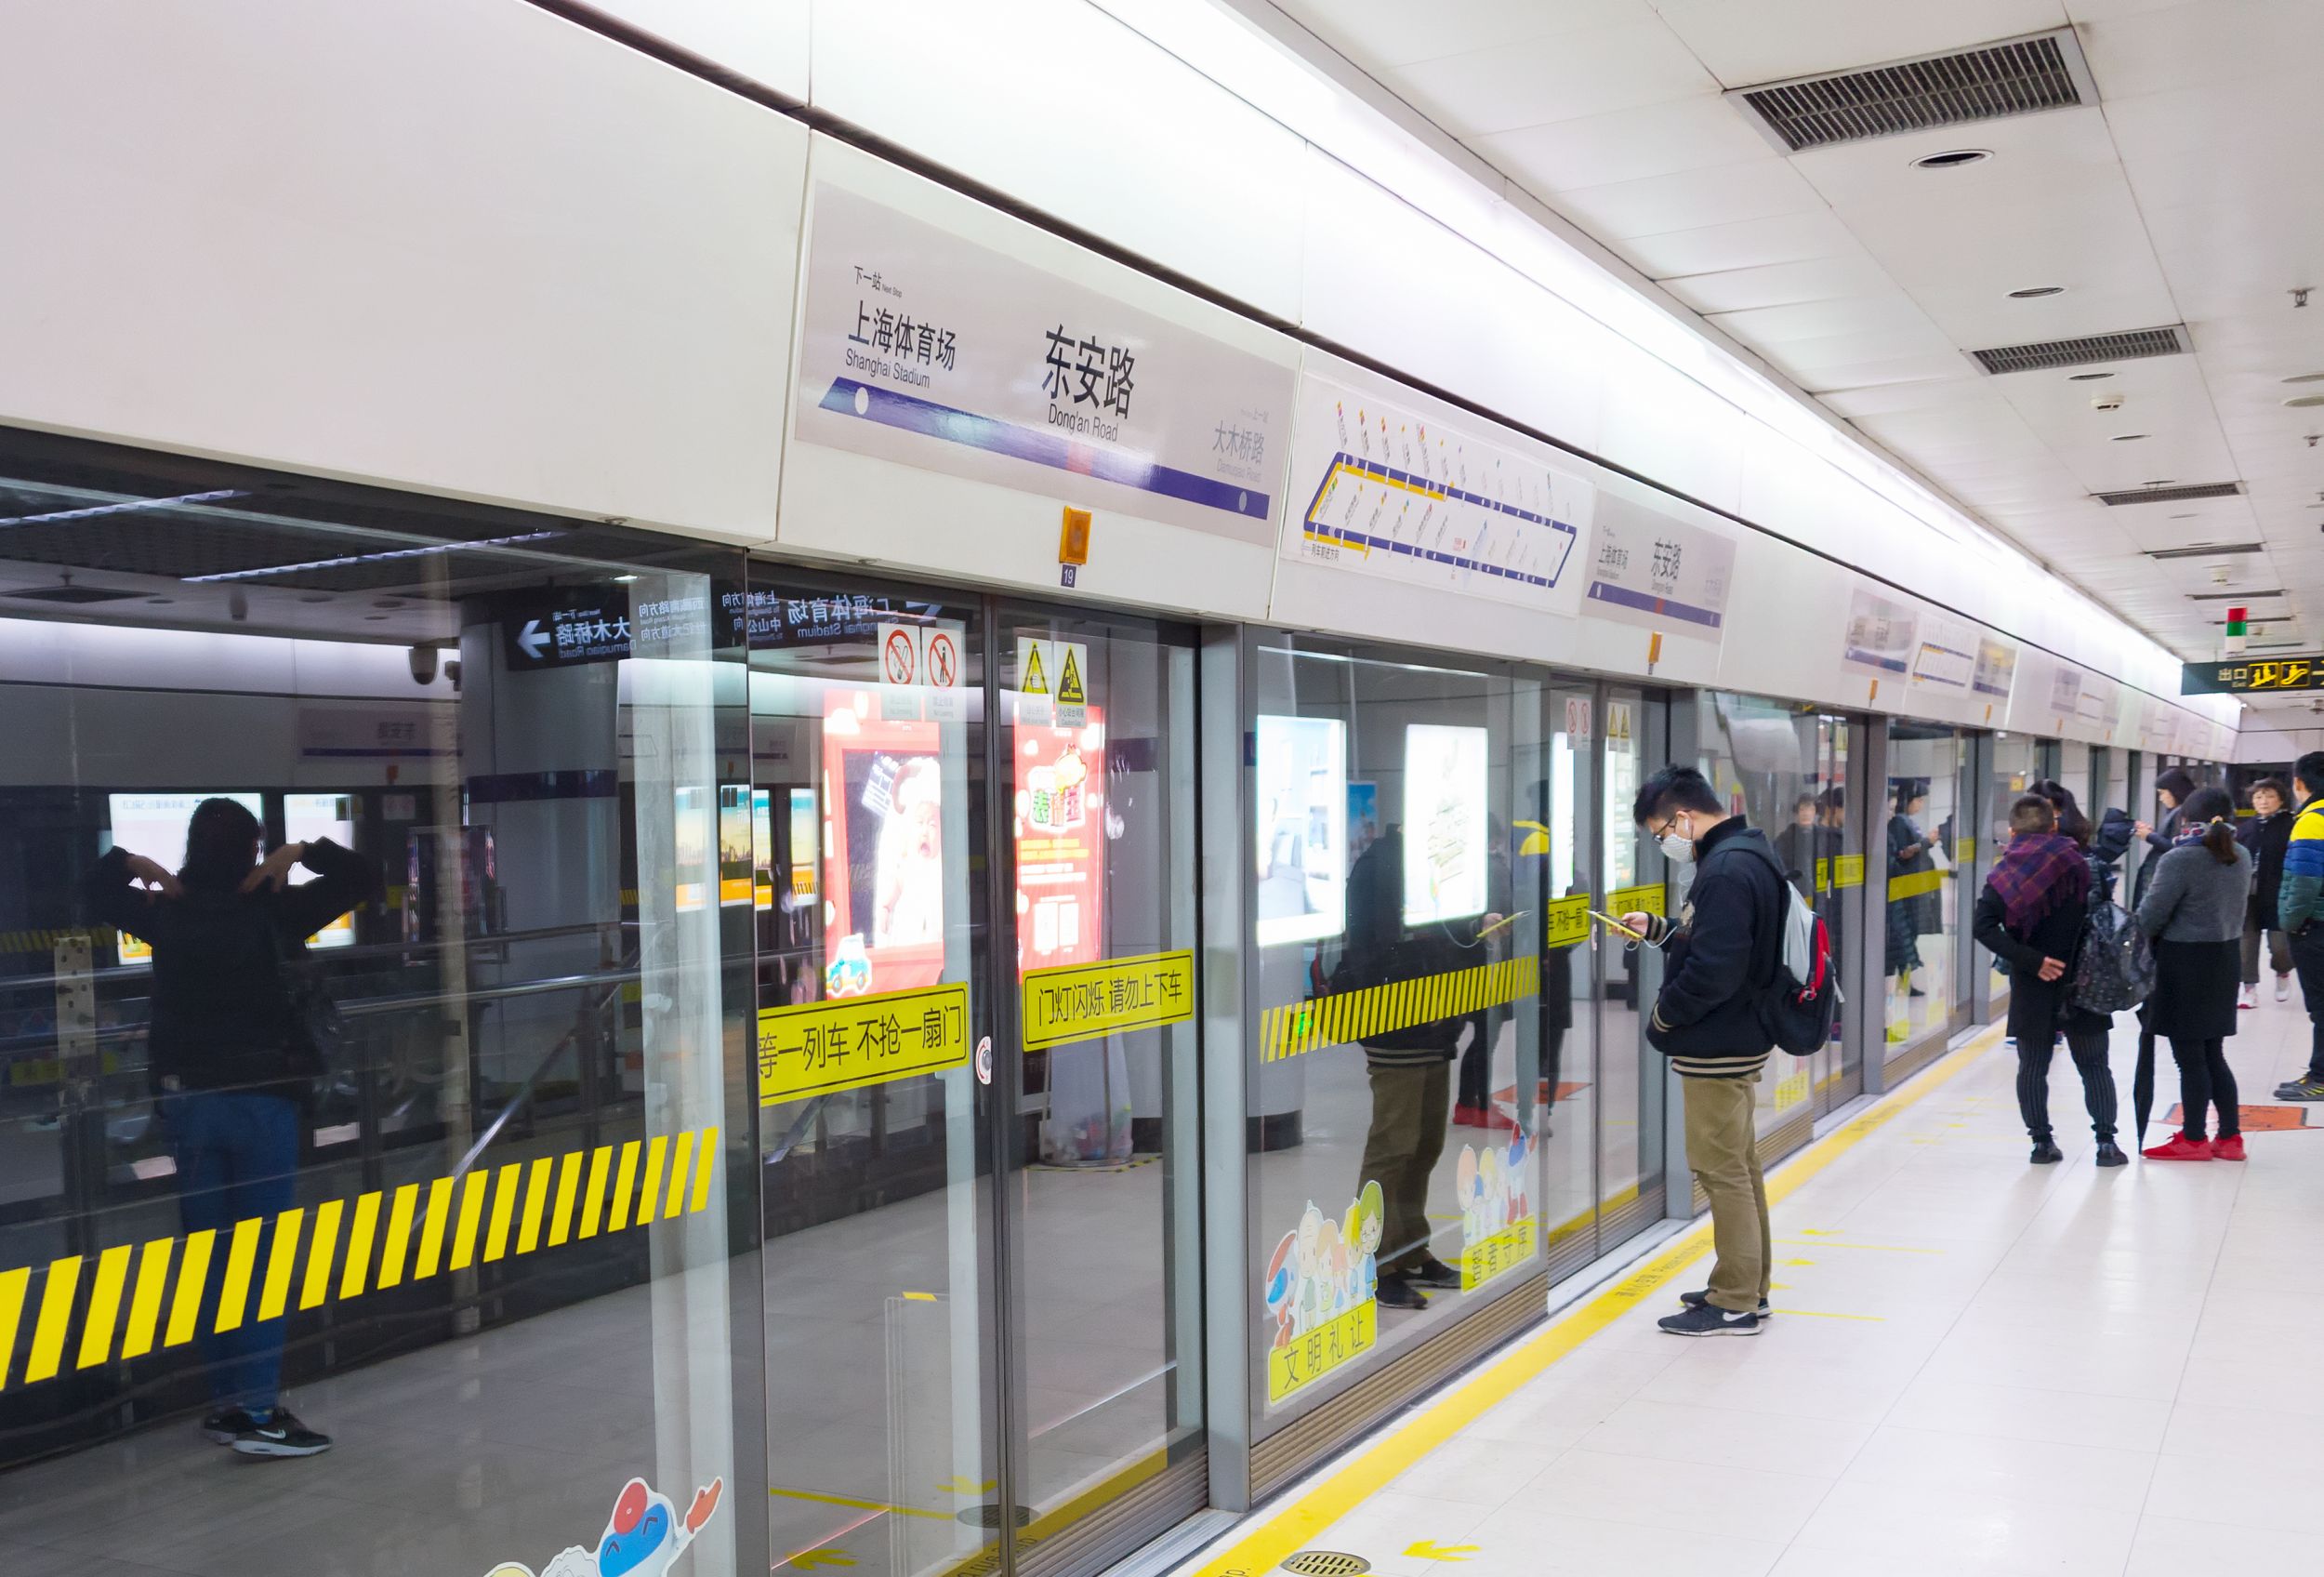 Automatisierte Zustiegstüren für mehr Sicherheit am Bahnsteig der Metro Shanghai 